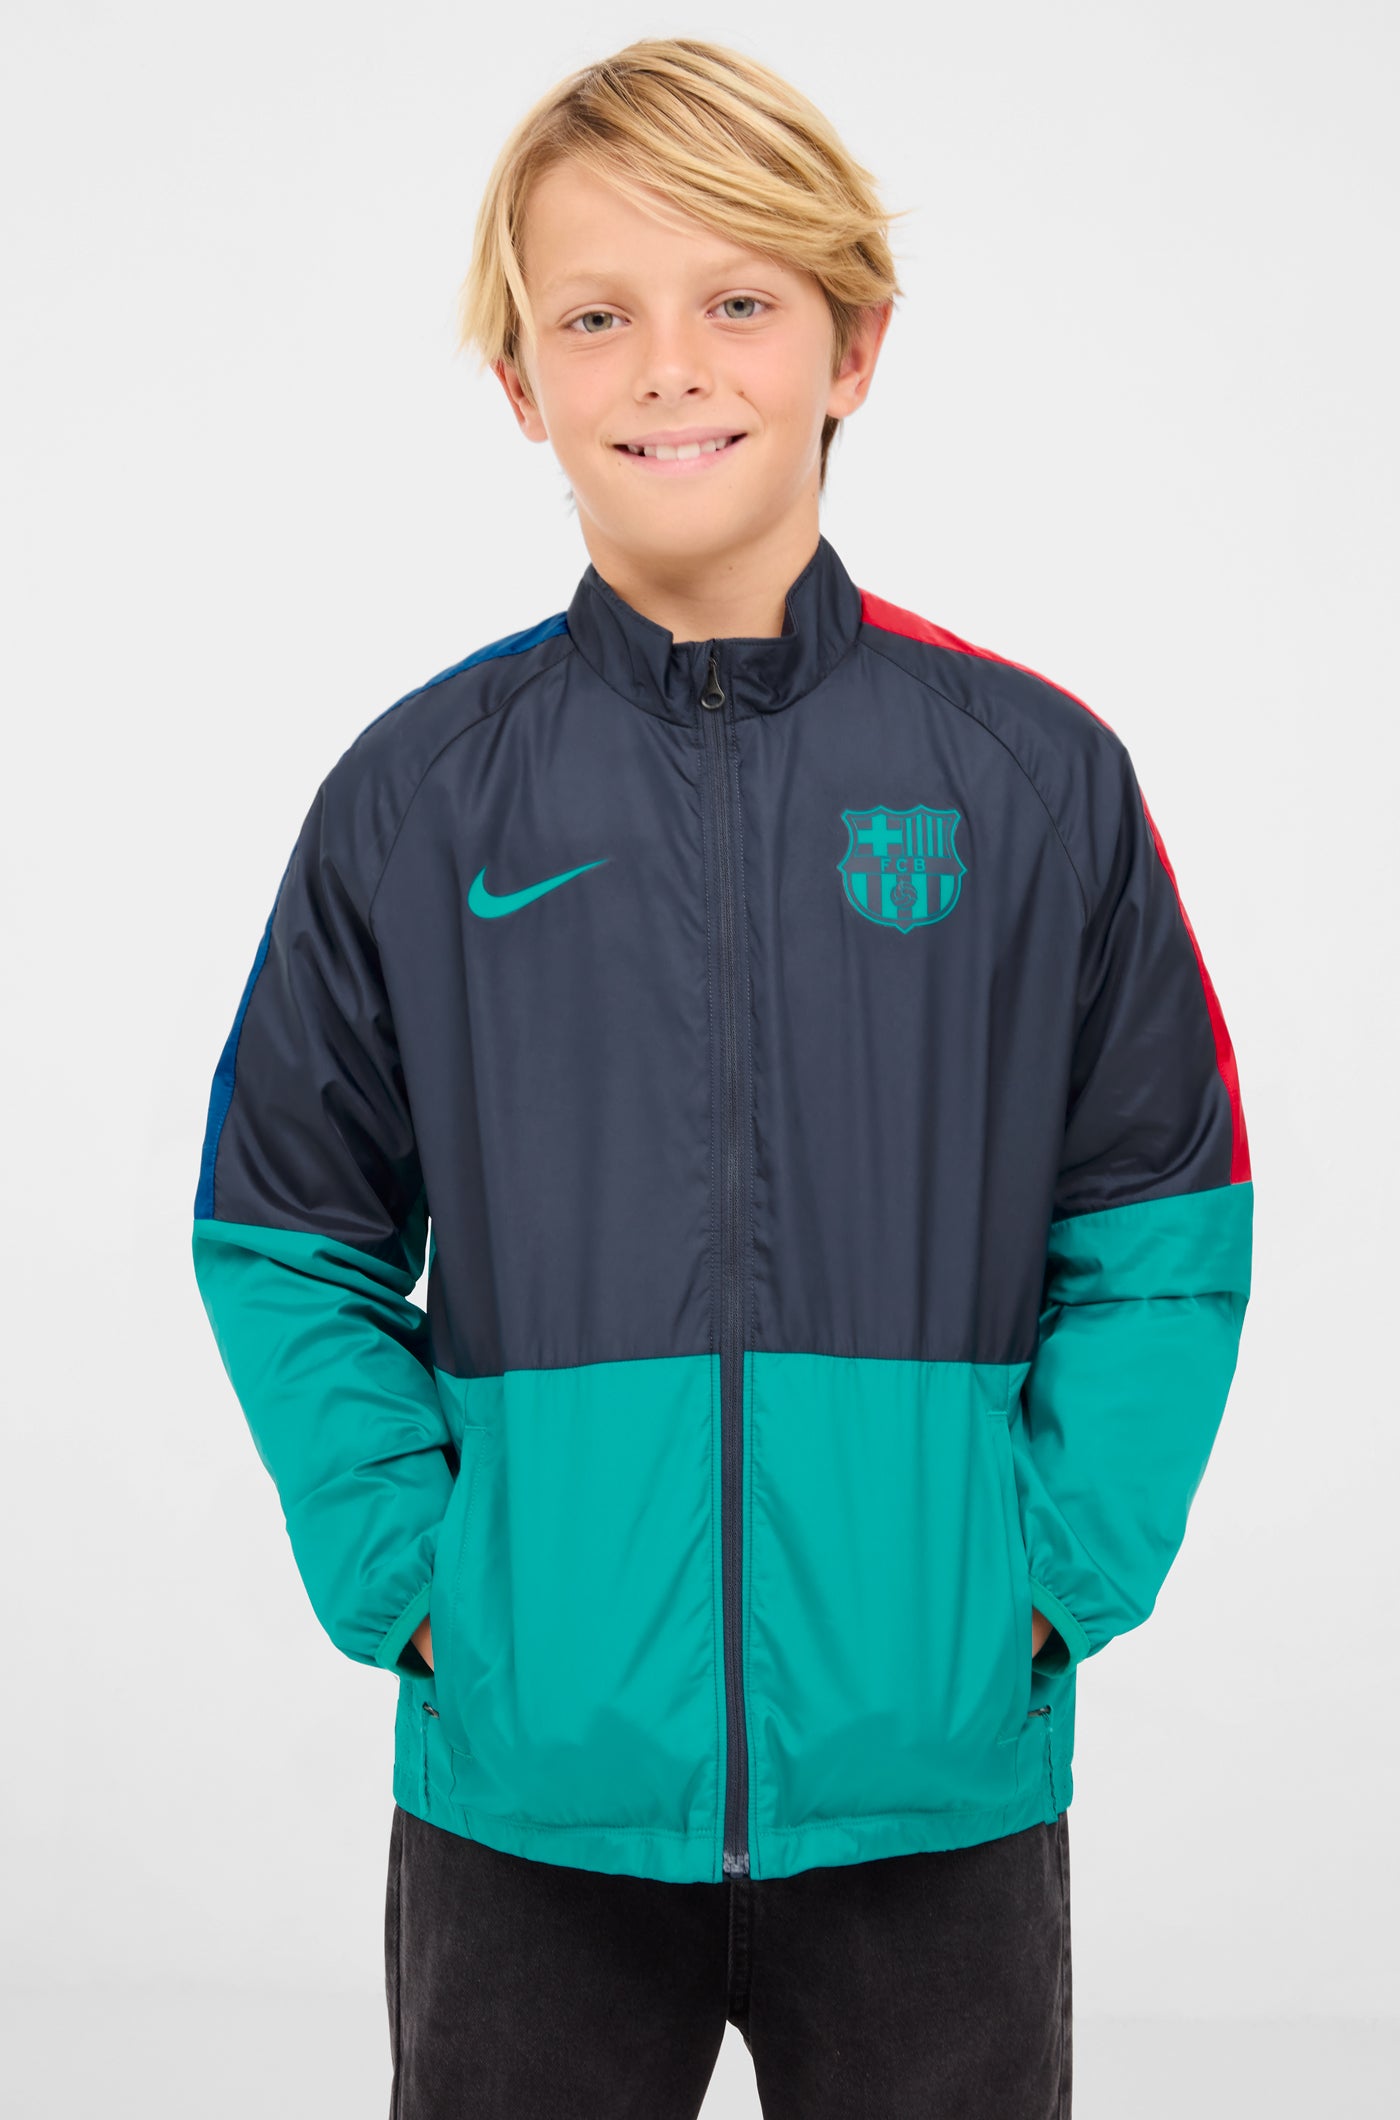 Bomber jacket Barça Nike – Barça Official Store Spotify Camp Nou